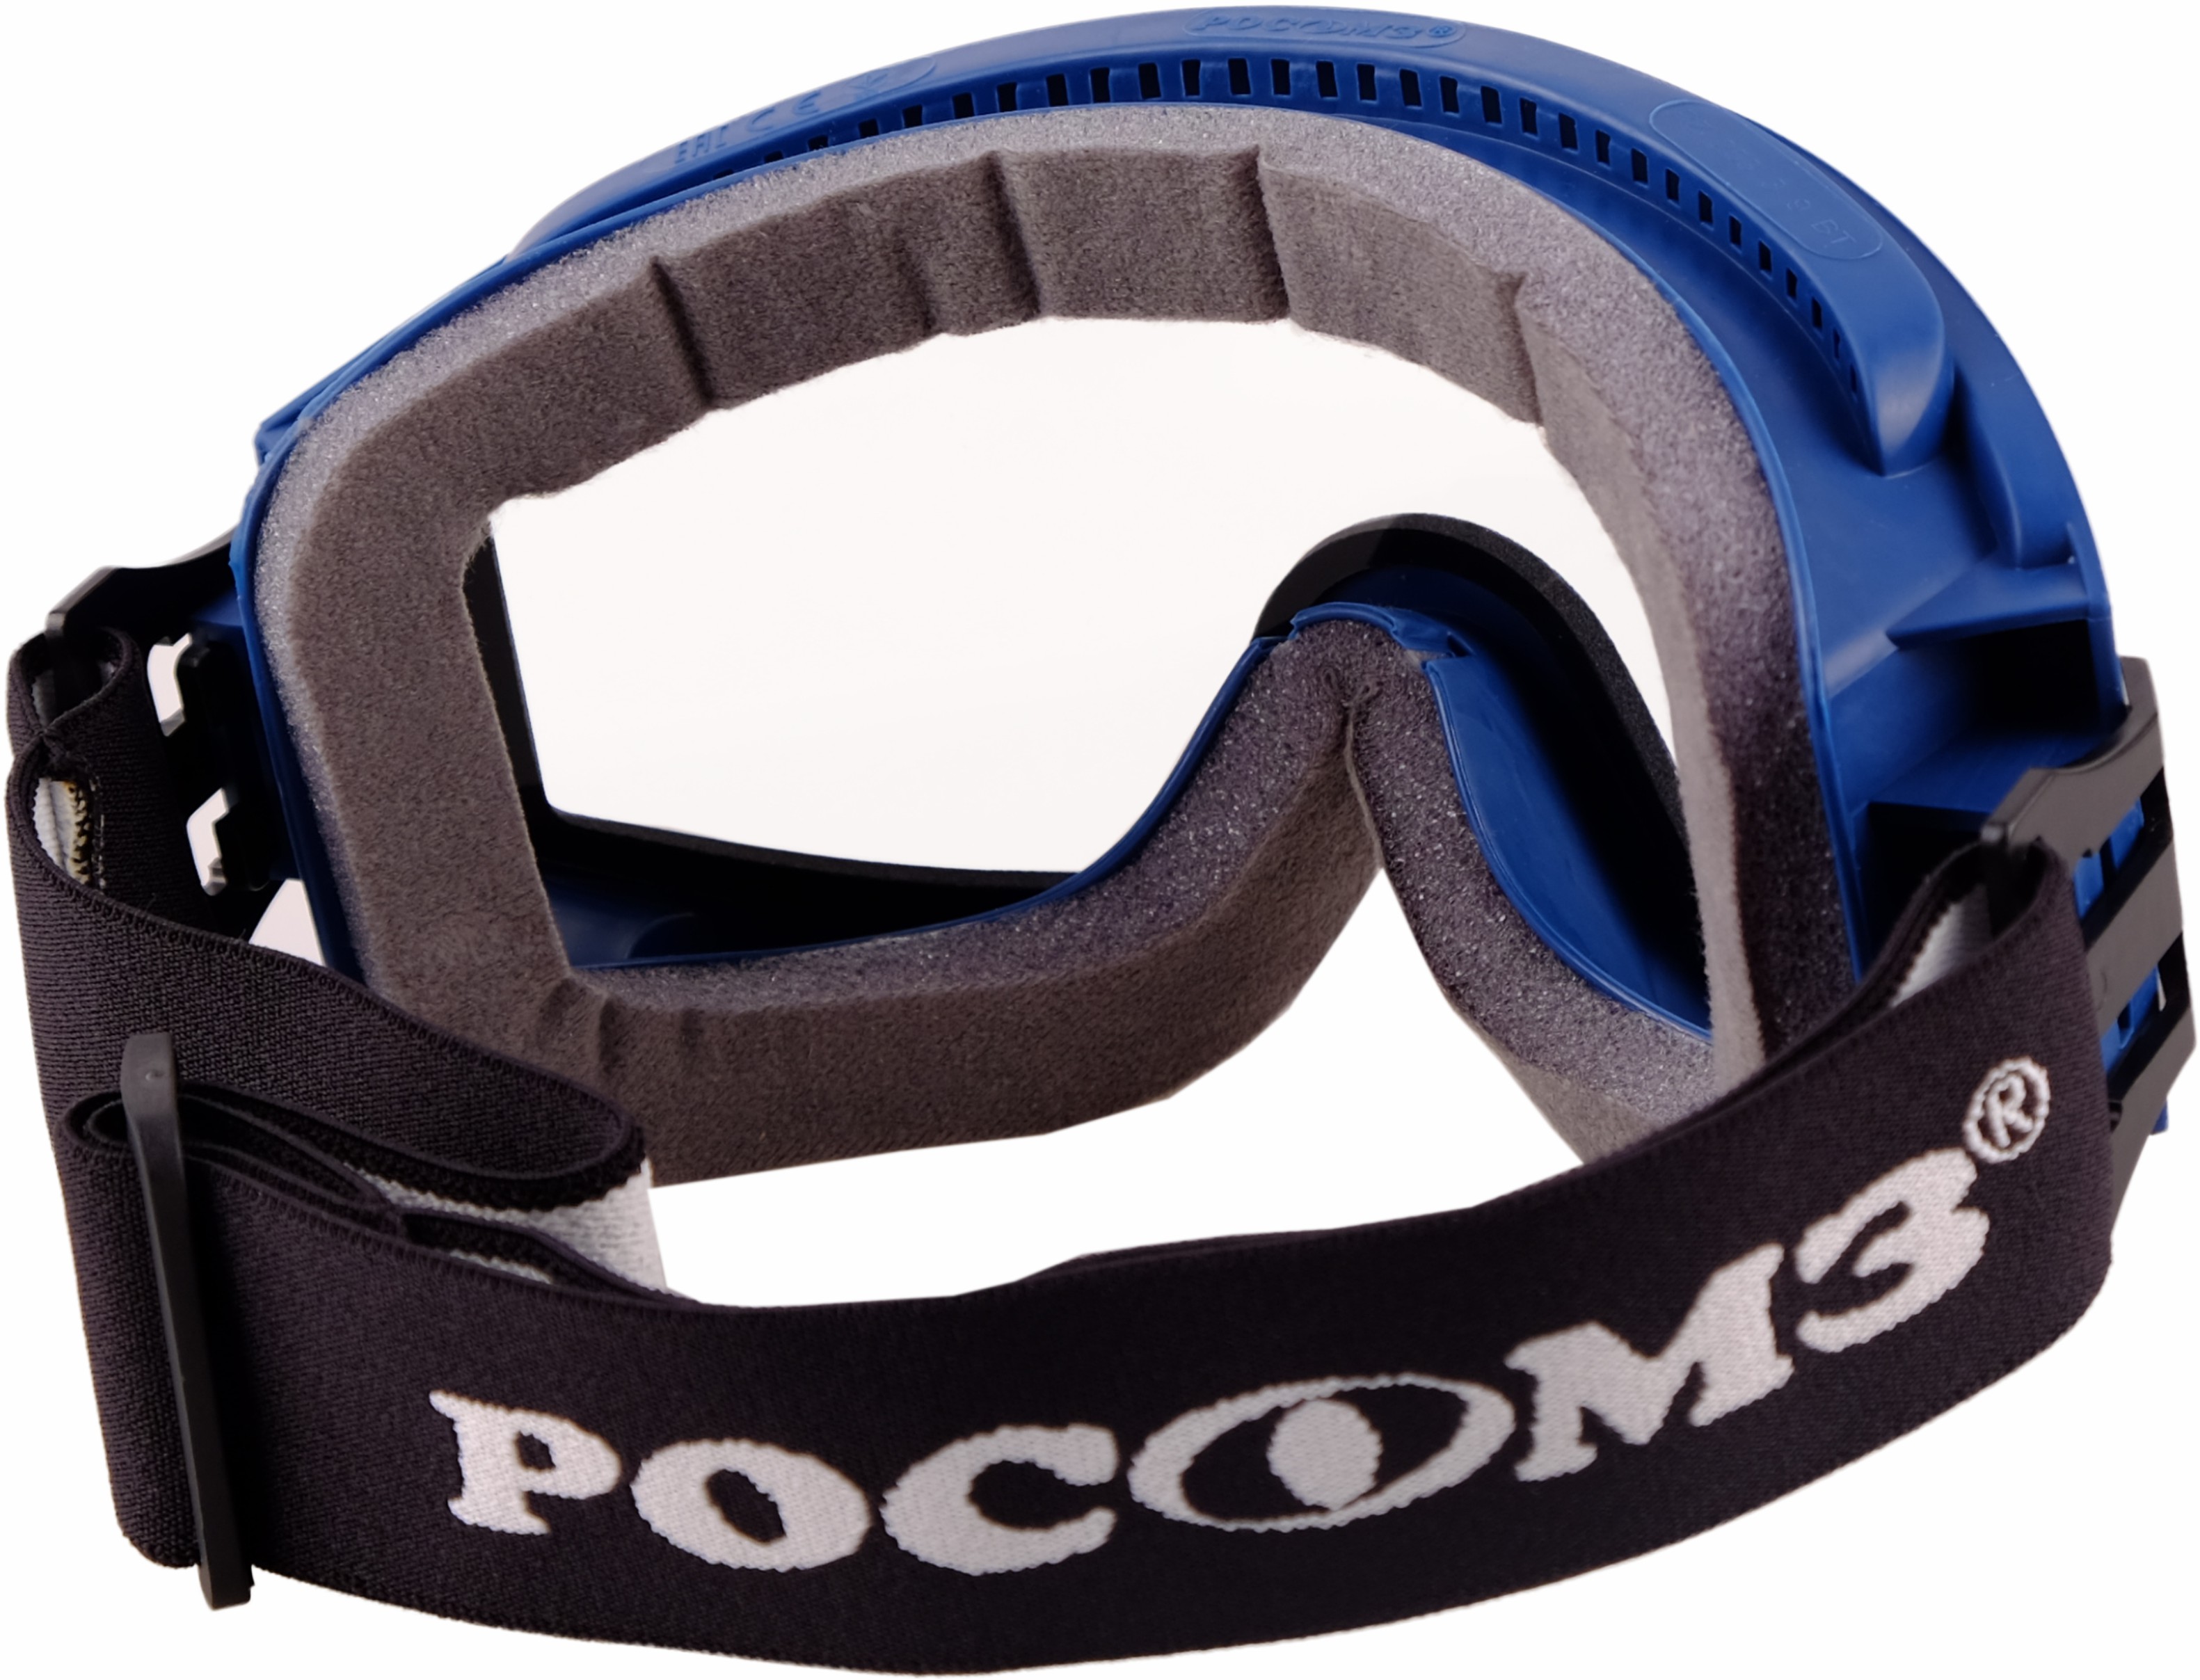 ЗН11 PANORAMA Арктика (2С-1,2 РС) очки защитные закрытые c обтюратором